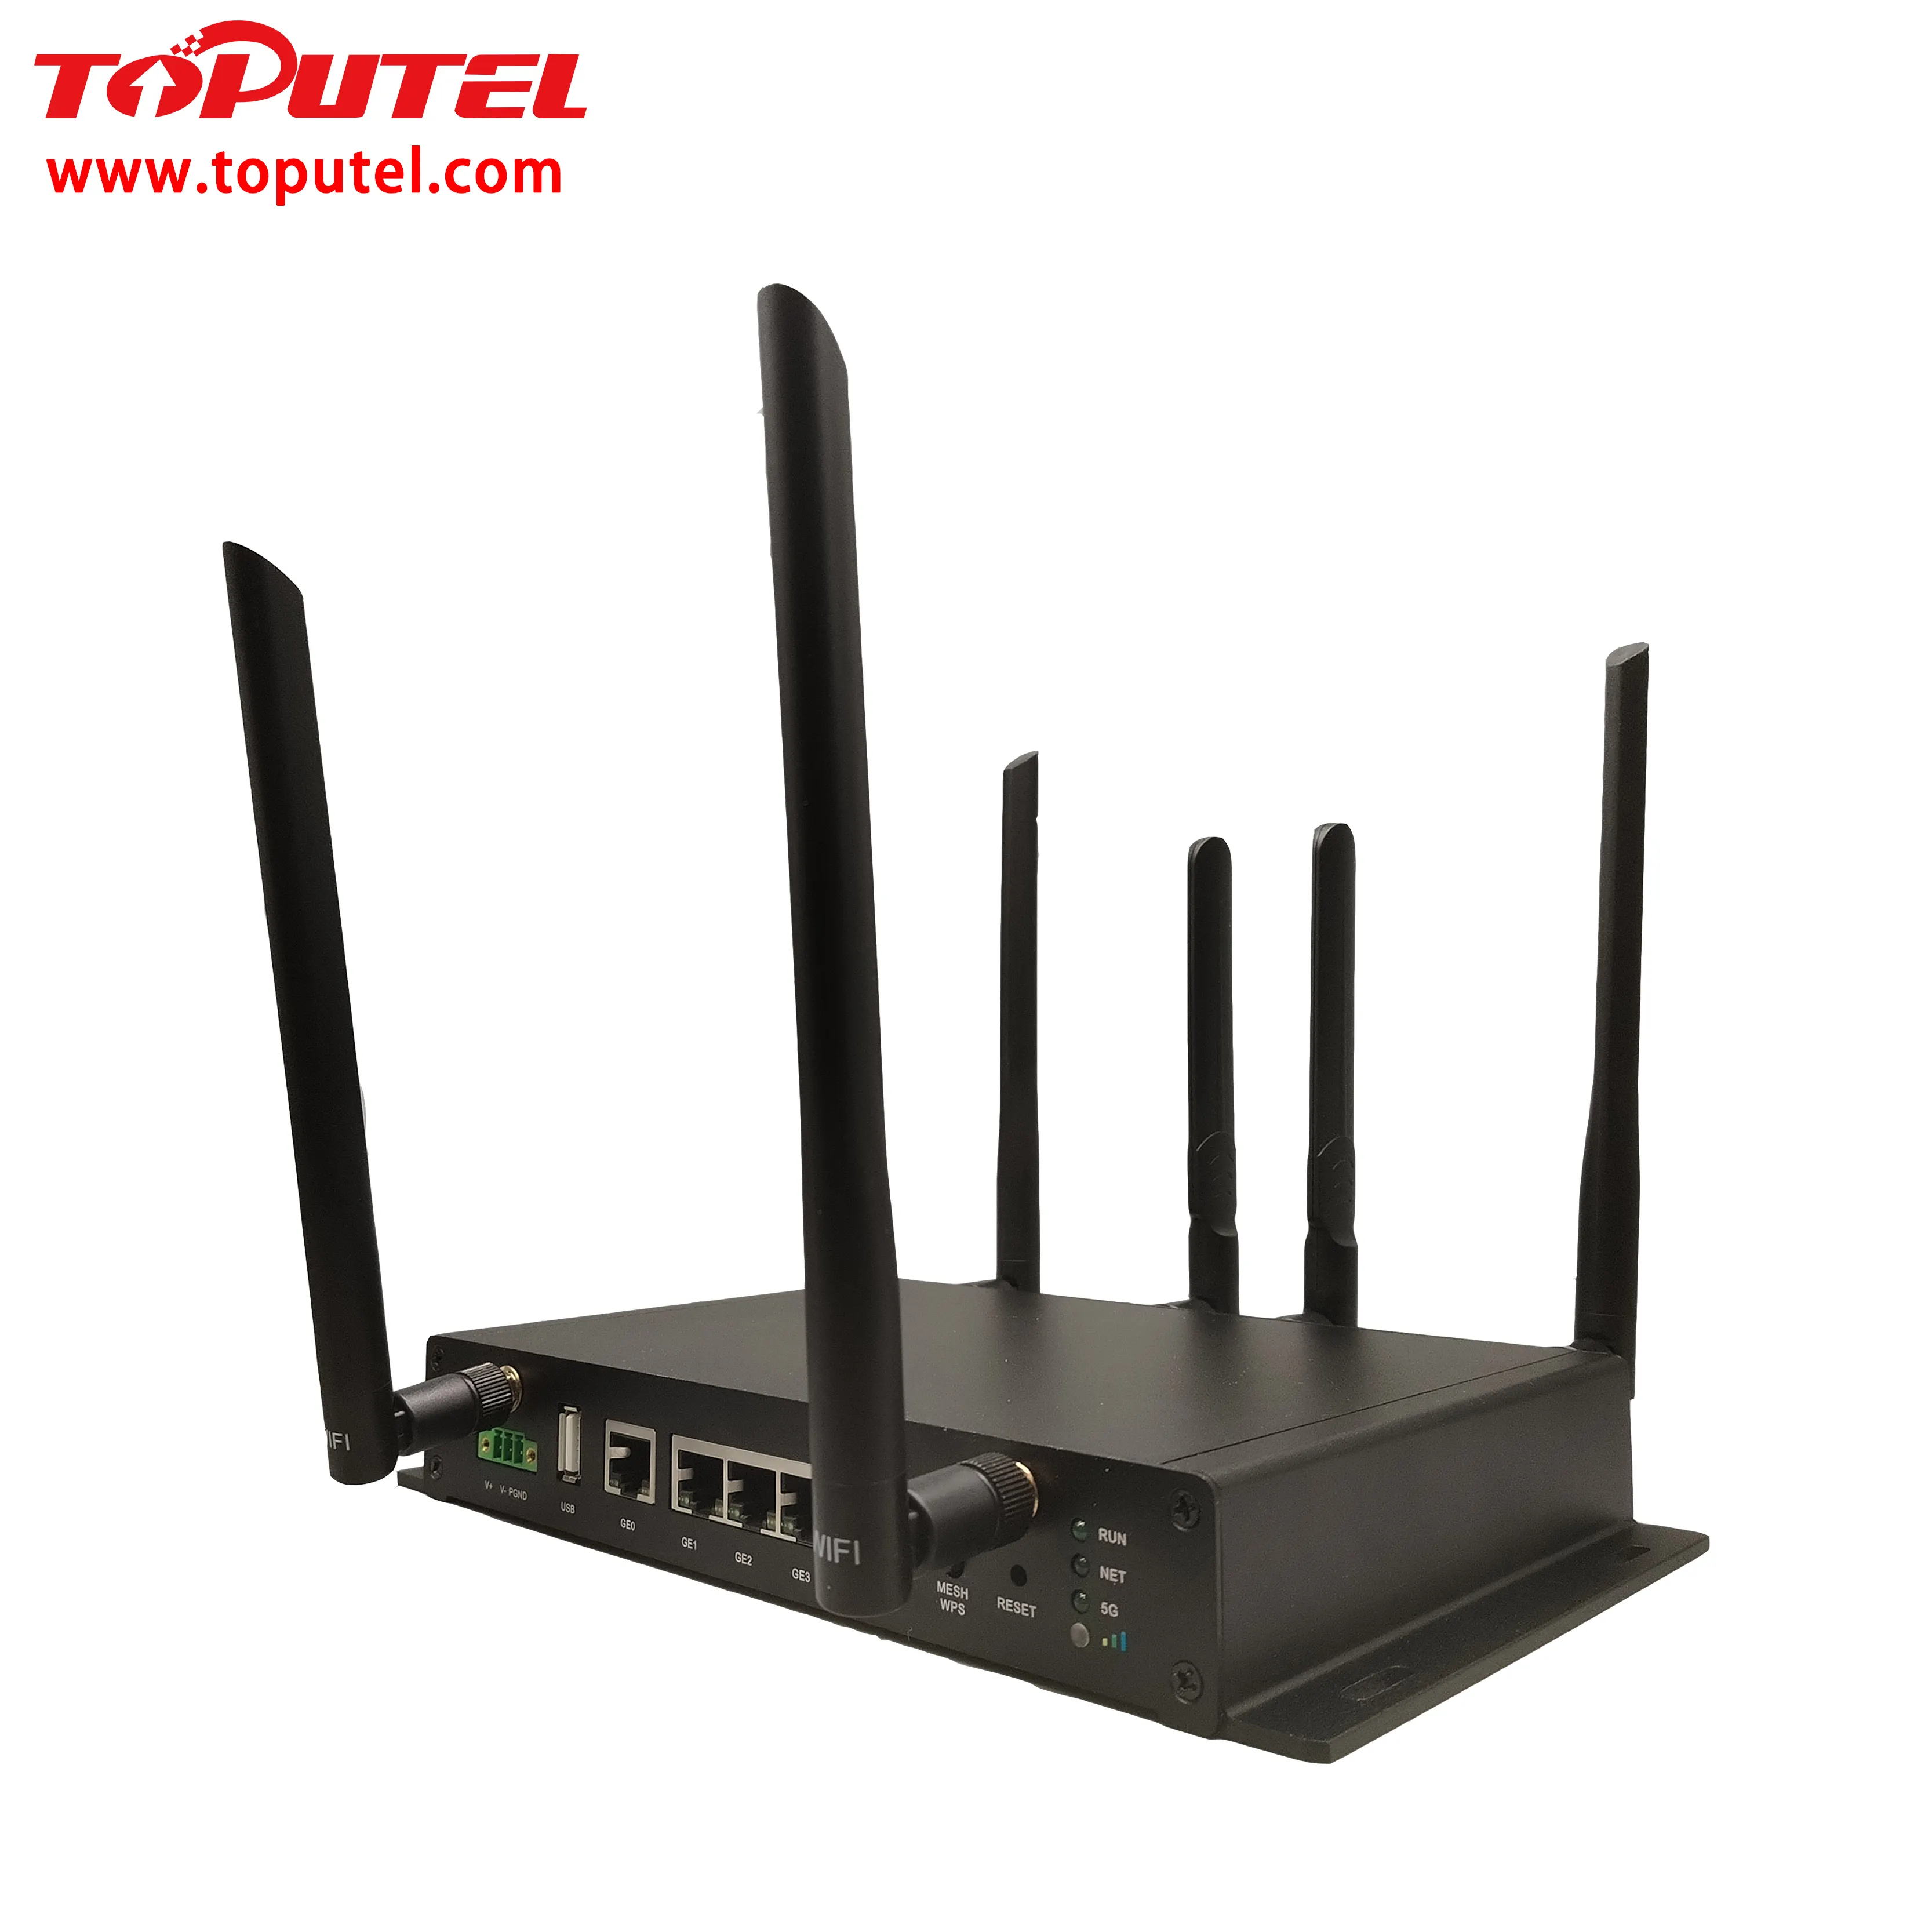 Lange Afstand Wifi Router 4G Naar Wifi6 Draadloze Toegang Internet Industriële Router Met Di, Doe Relay, Rs485, Rs232 Iot Gegevens Naar Cloud